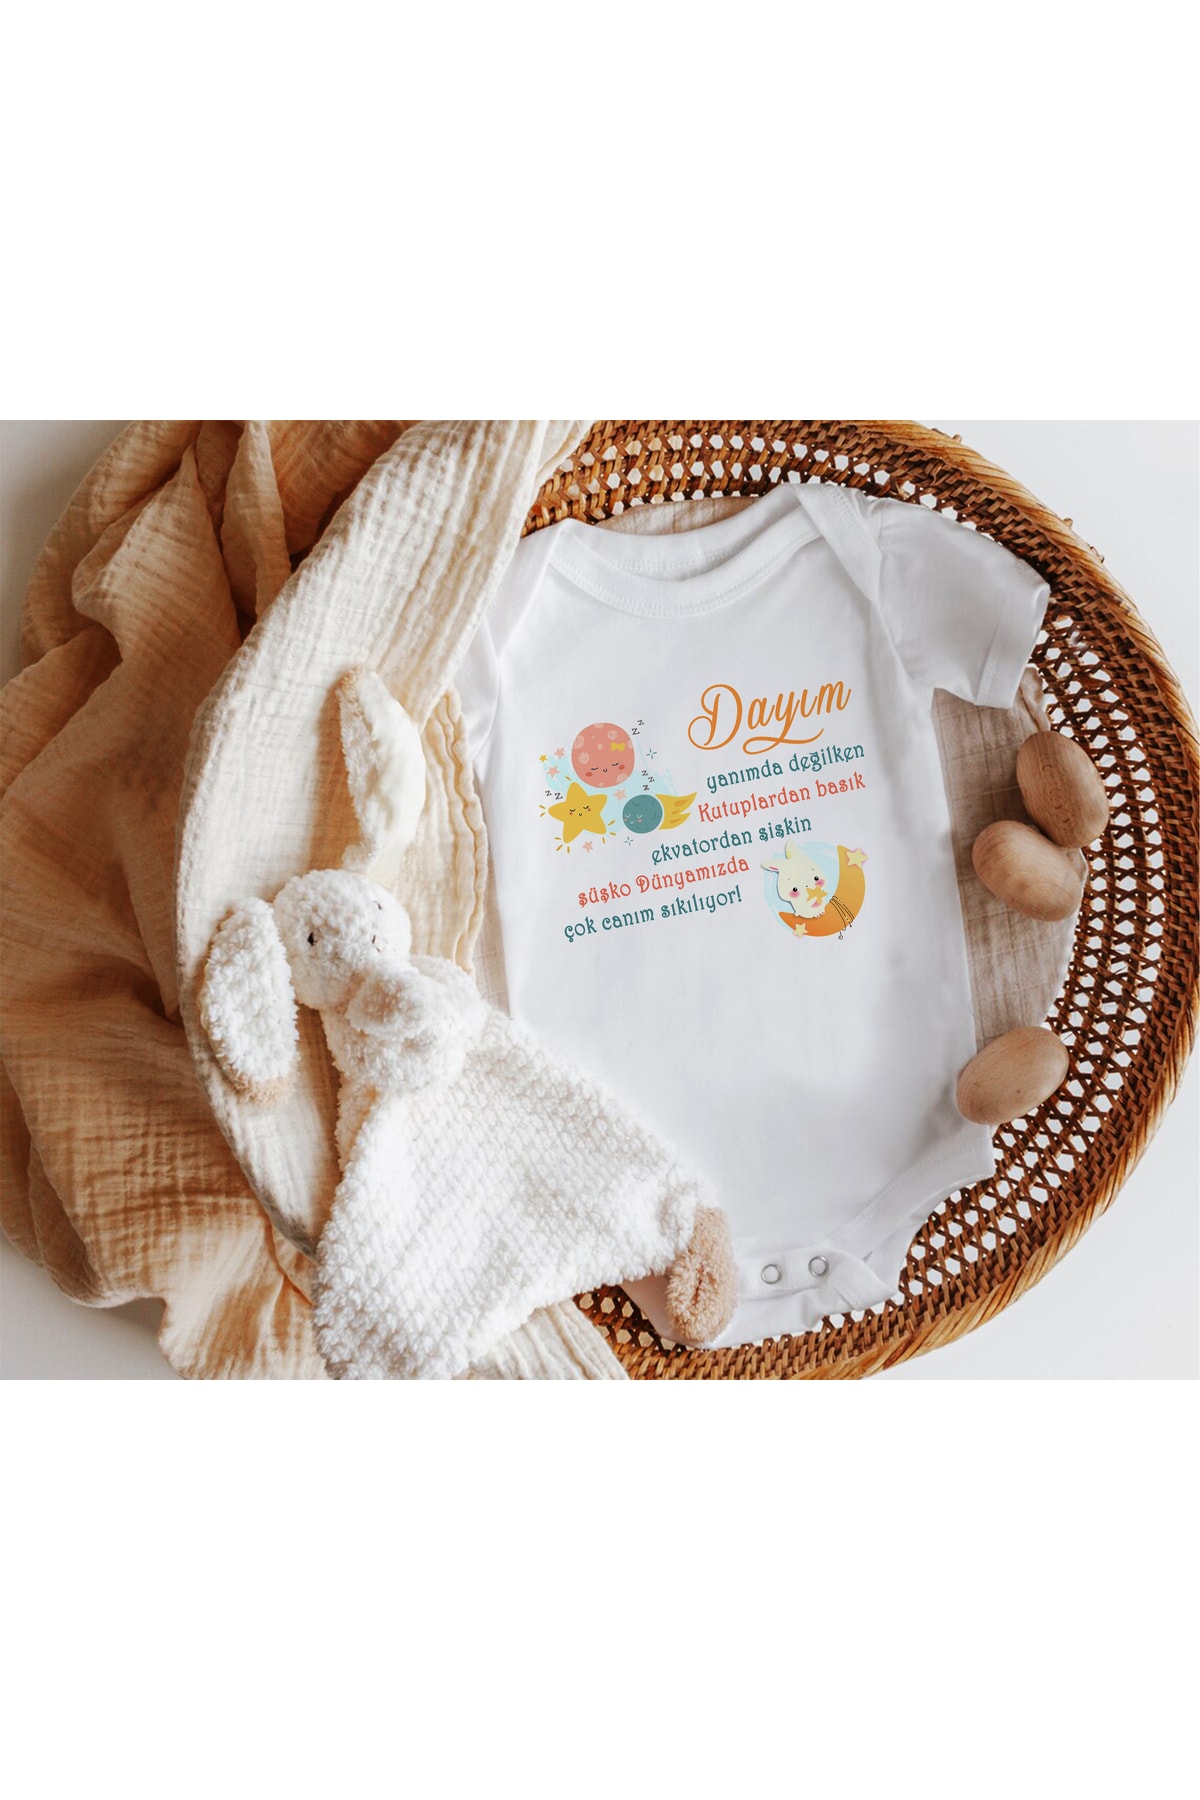 Niles Baby Shop Dayım Şişko Dünyamızda Canım Çok Sıkılıyor Yazılı Kısa Kol Zıbın